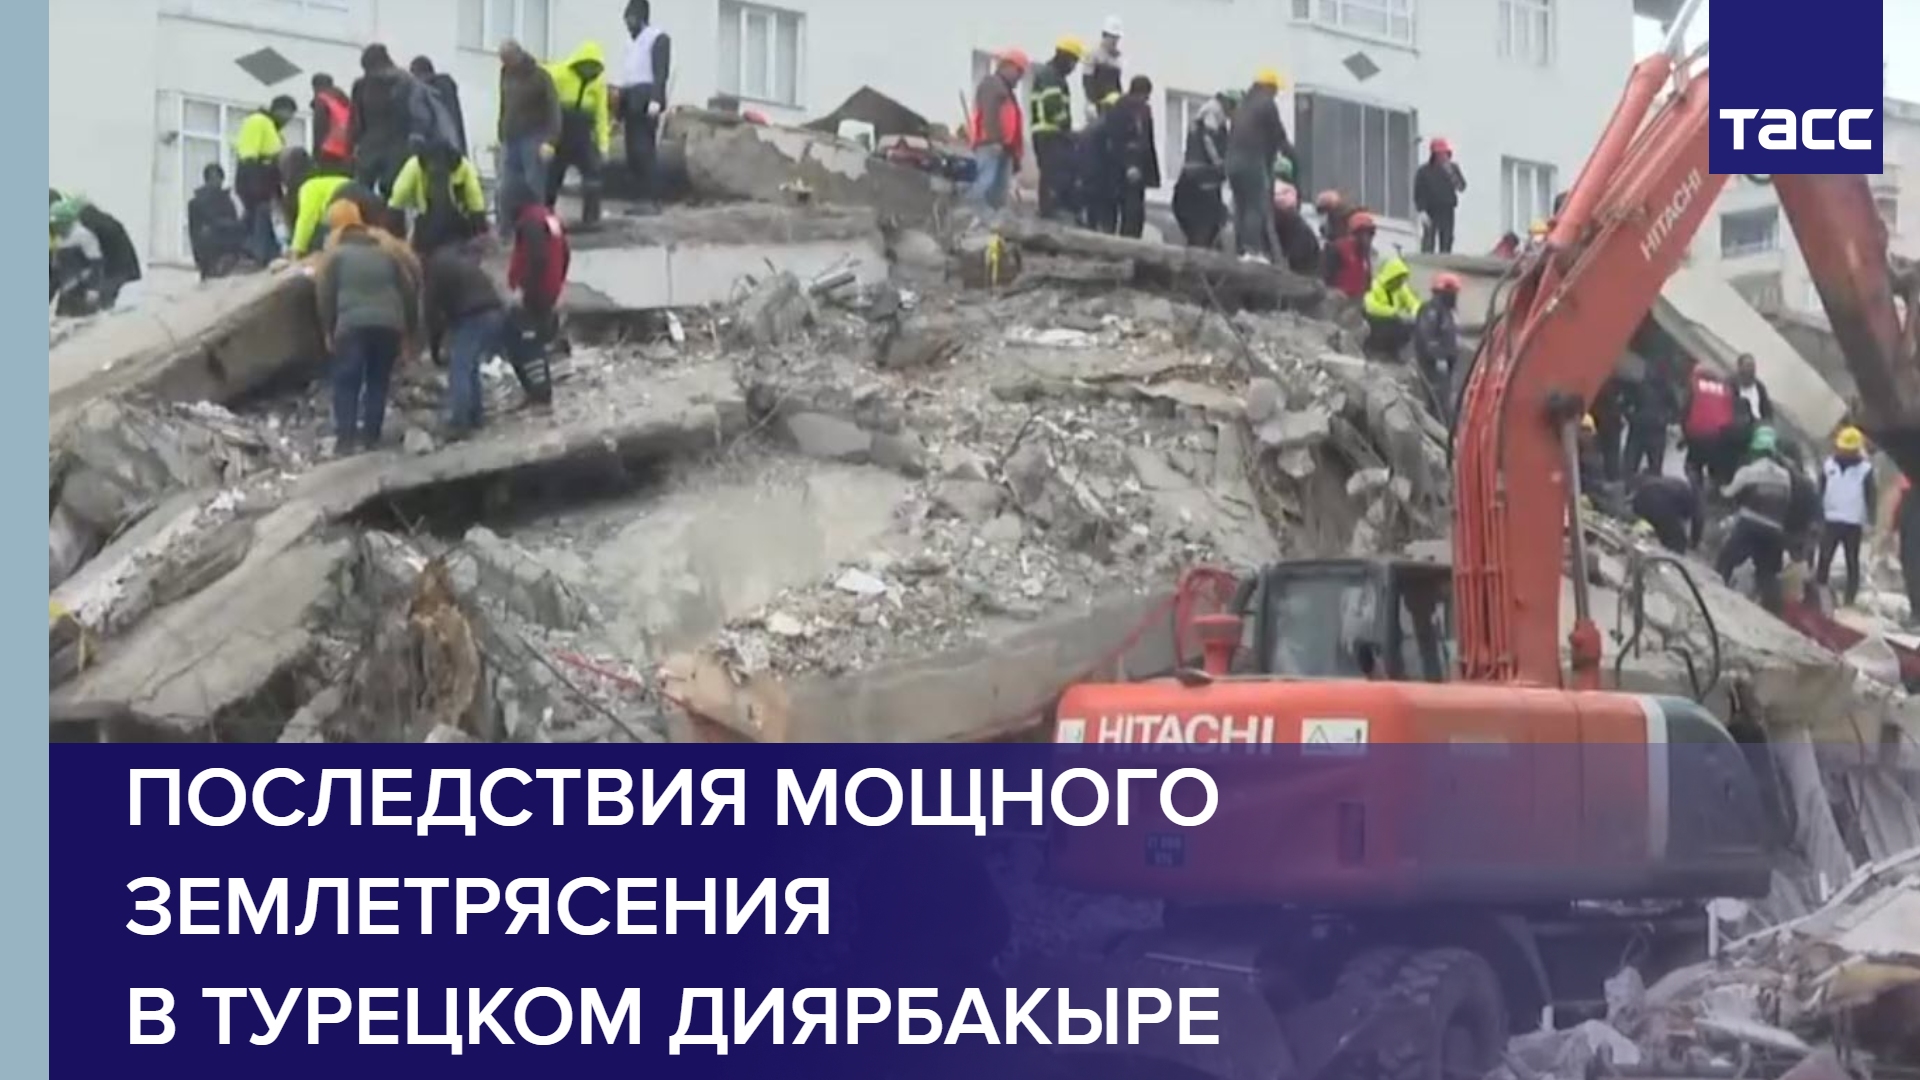 Землетрясение красноярске сегодня. Последствия землетрясений. Возможное землетрясение.